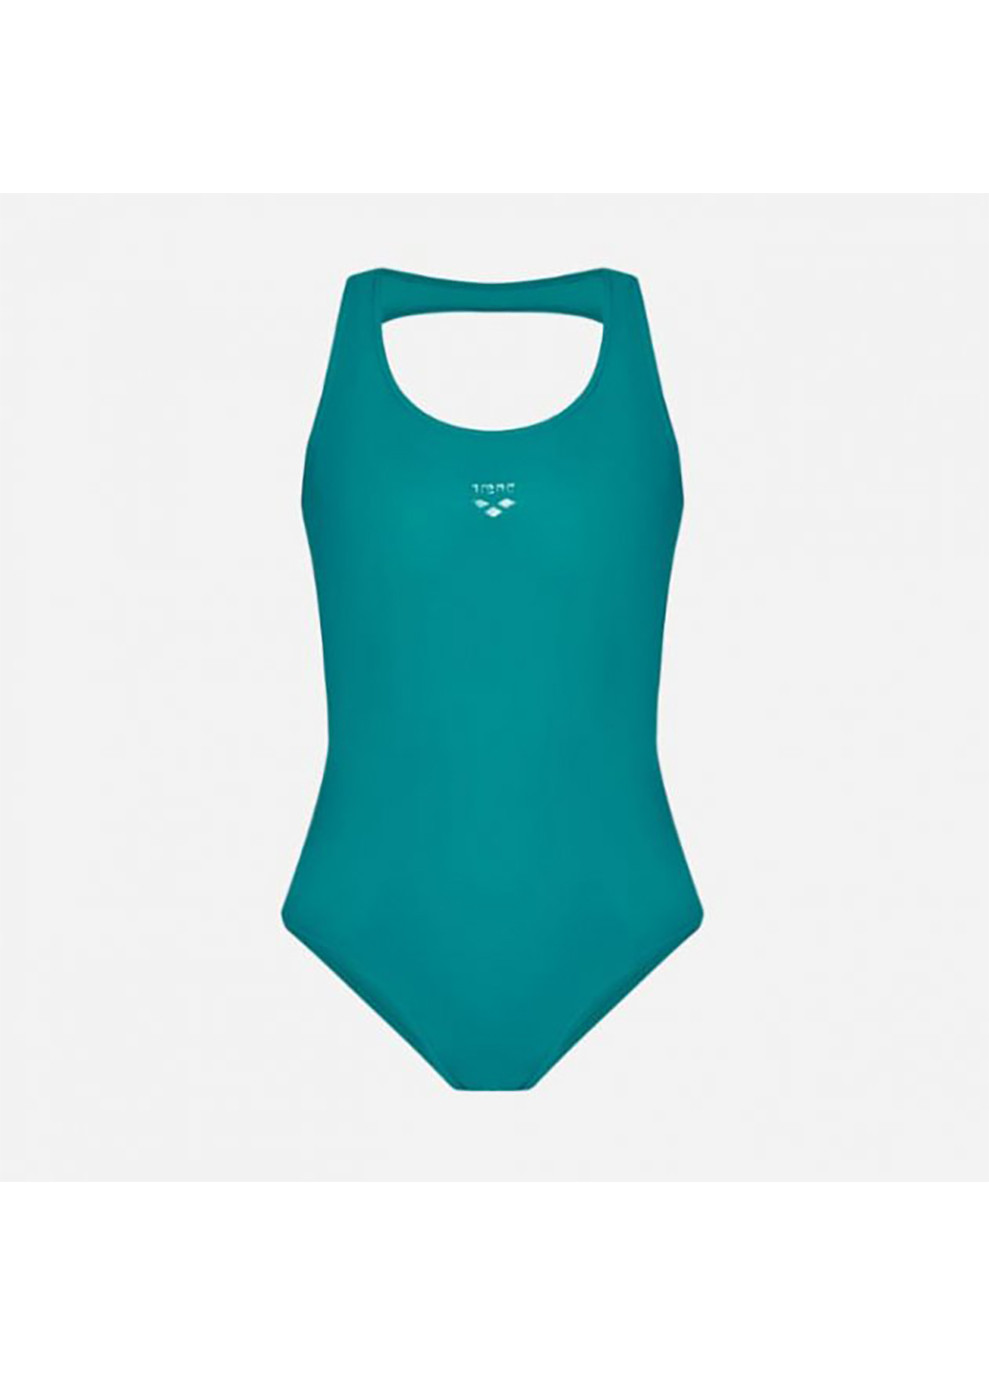 Зеленый демисезонный купальник слитный женский solid o back swimsuit зеленый Arena